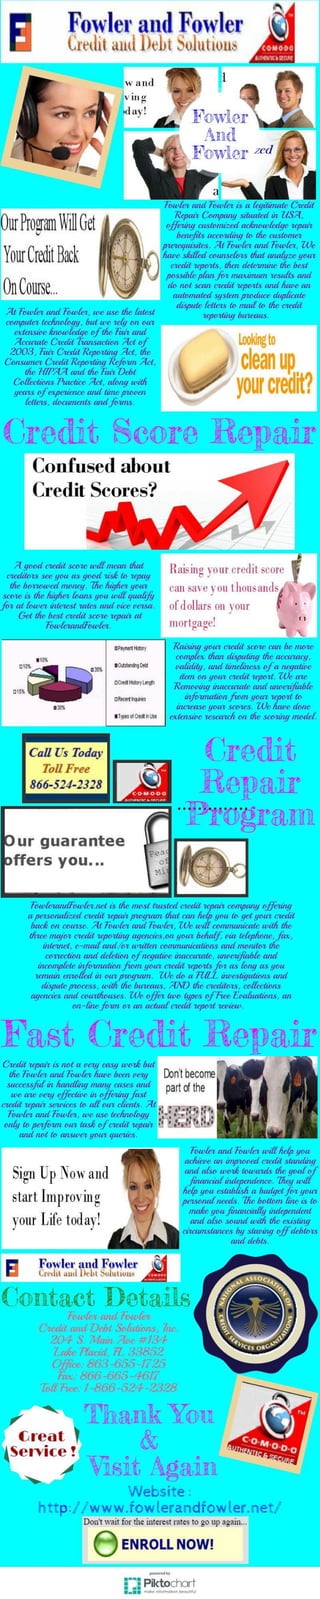 Fast credit repair score and program